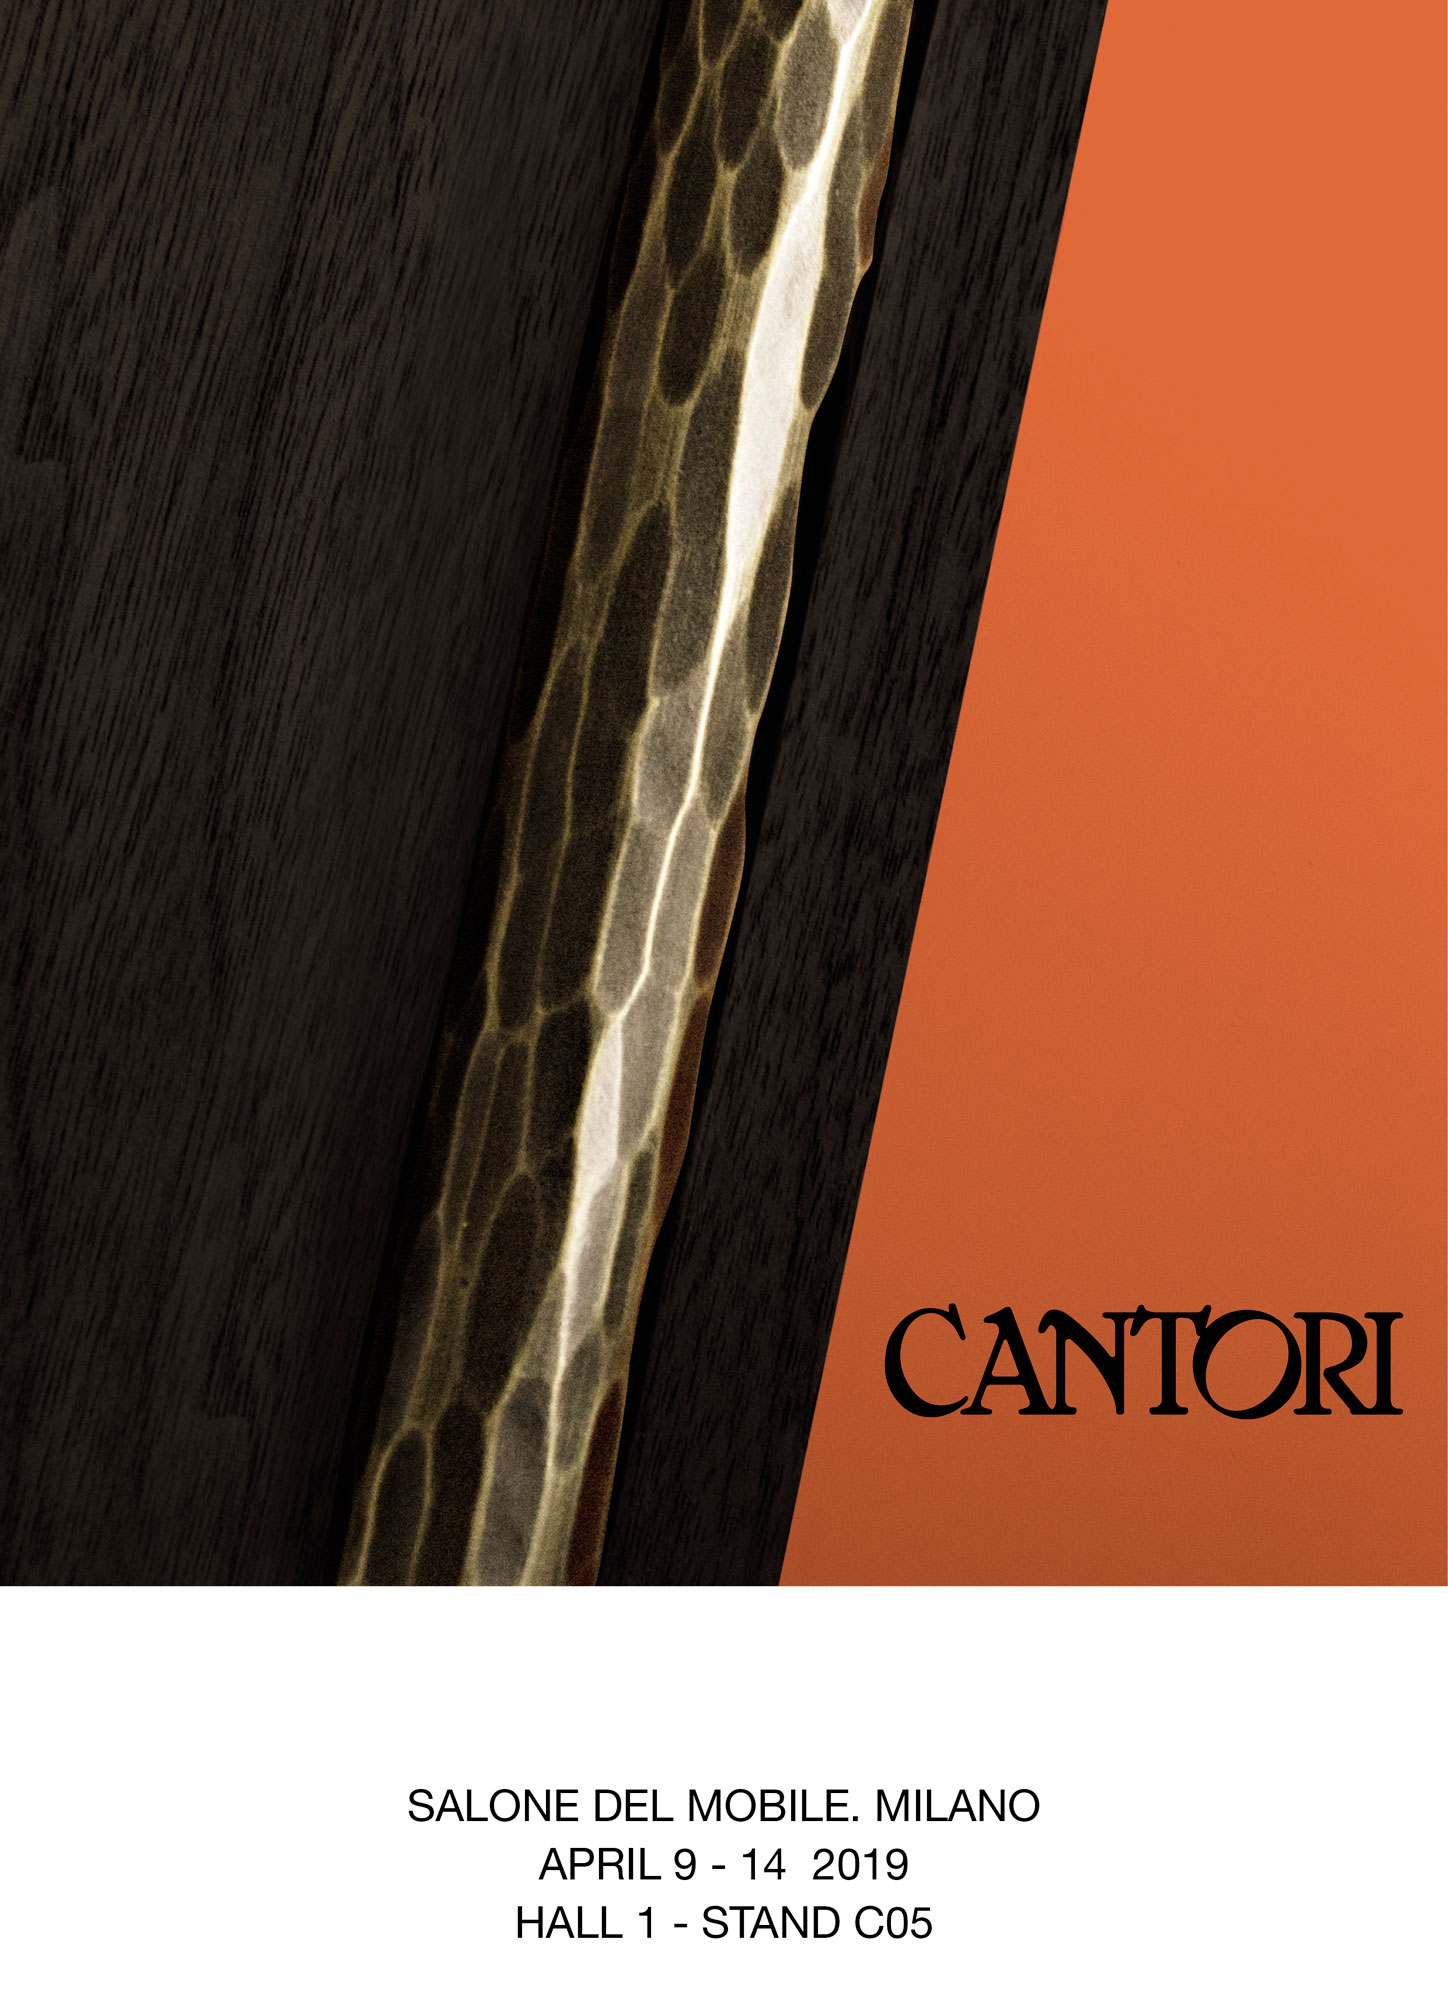 Cantori al Salone del Mobile di Milano 2019 - Cantori